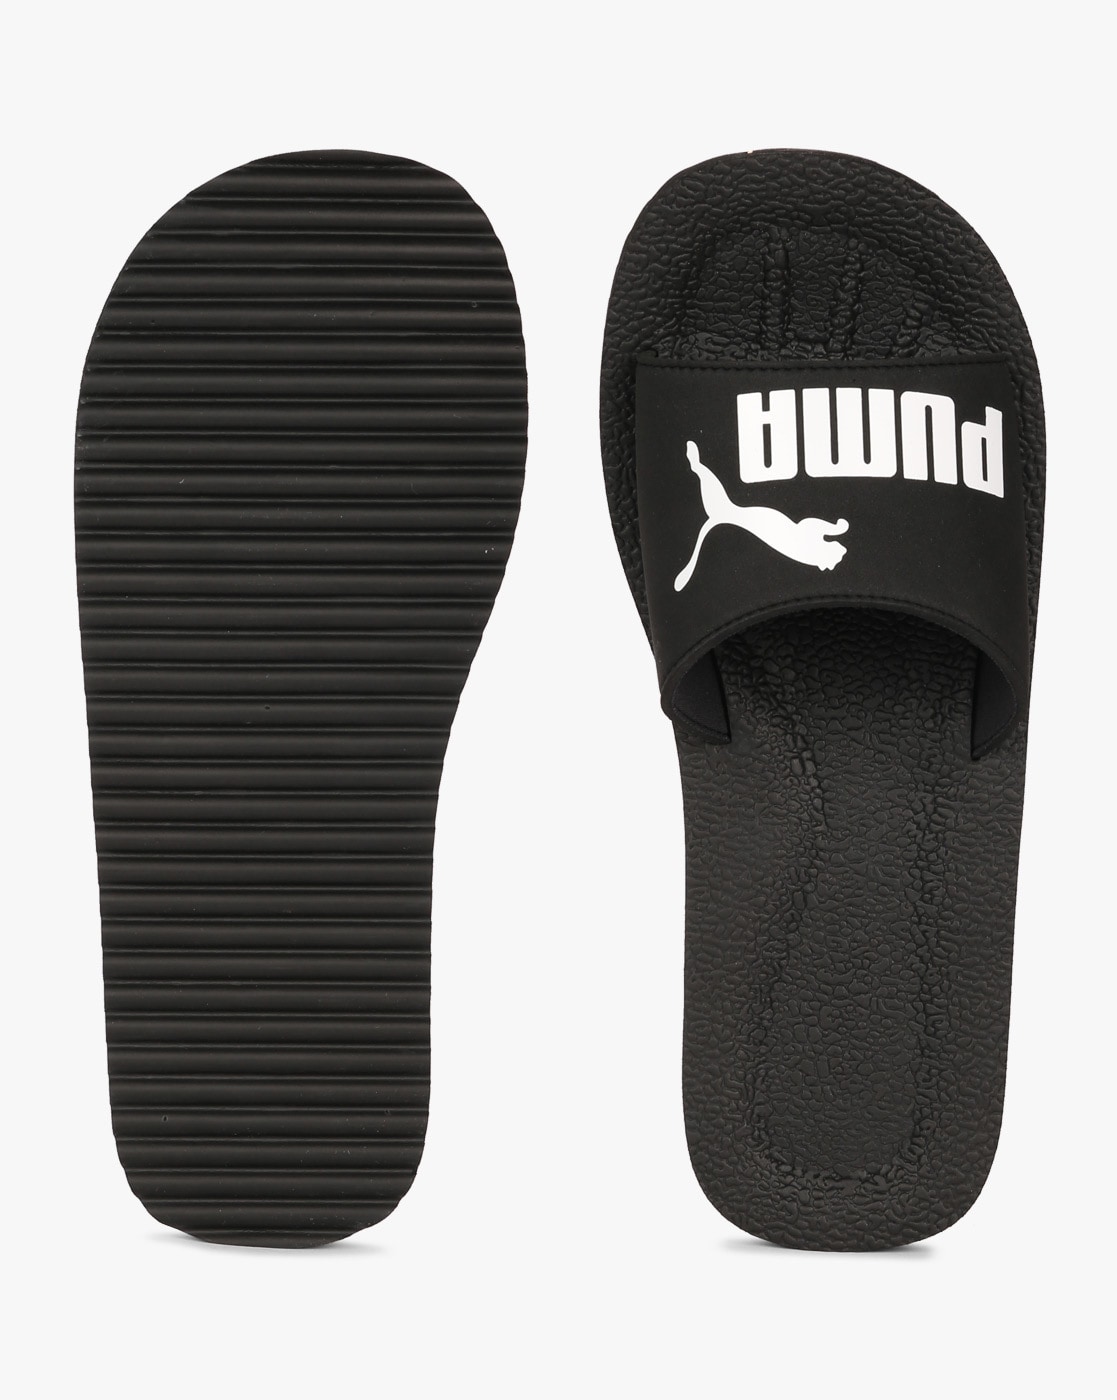 puma flip flops price